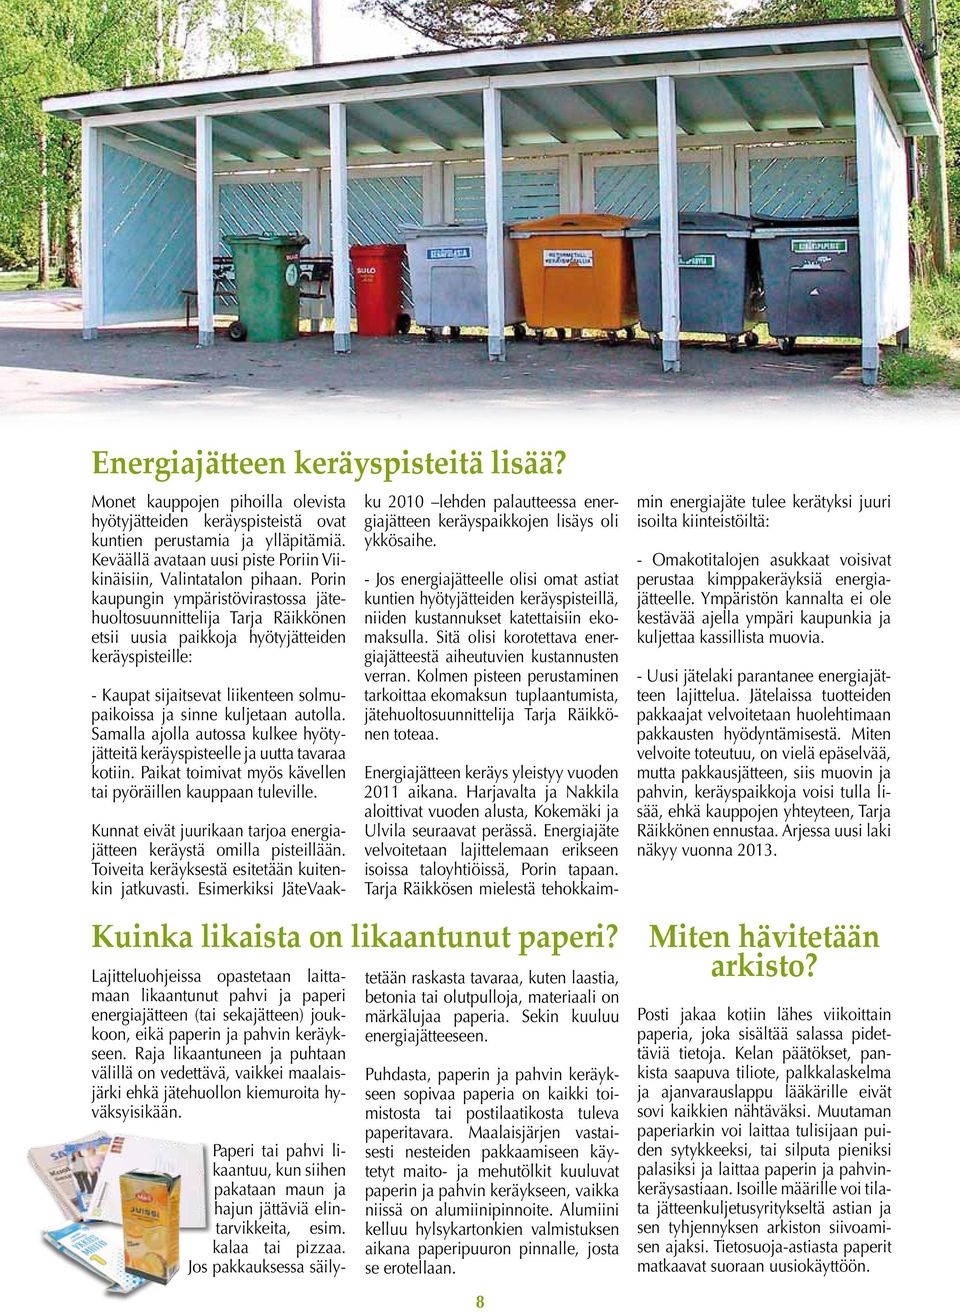 Porin kaupungin ympäristövirastossa jätehuoltosuunnittelija Tarja Räikkönen etsii uusia paikkoja hyötyjätteiden keräyspisteille: - Kaupat sijaitsevat liikenteen solmupaikoissa ja sinne kuljetaan